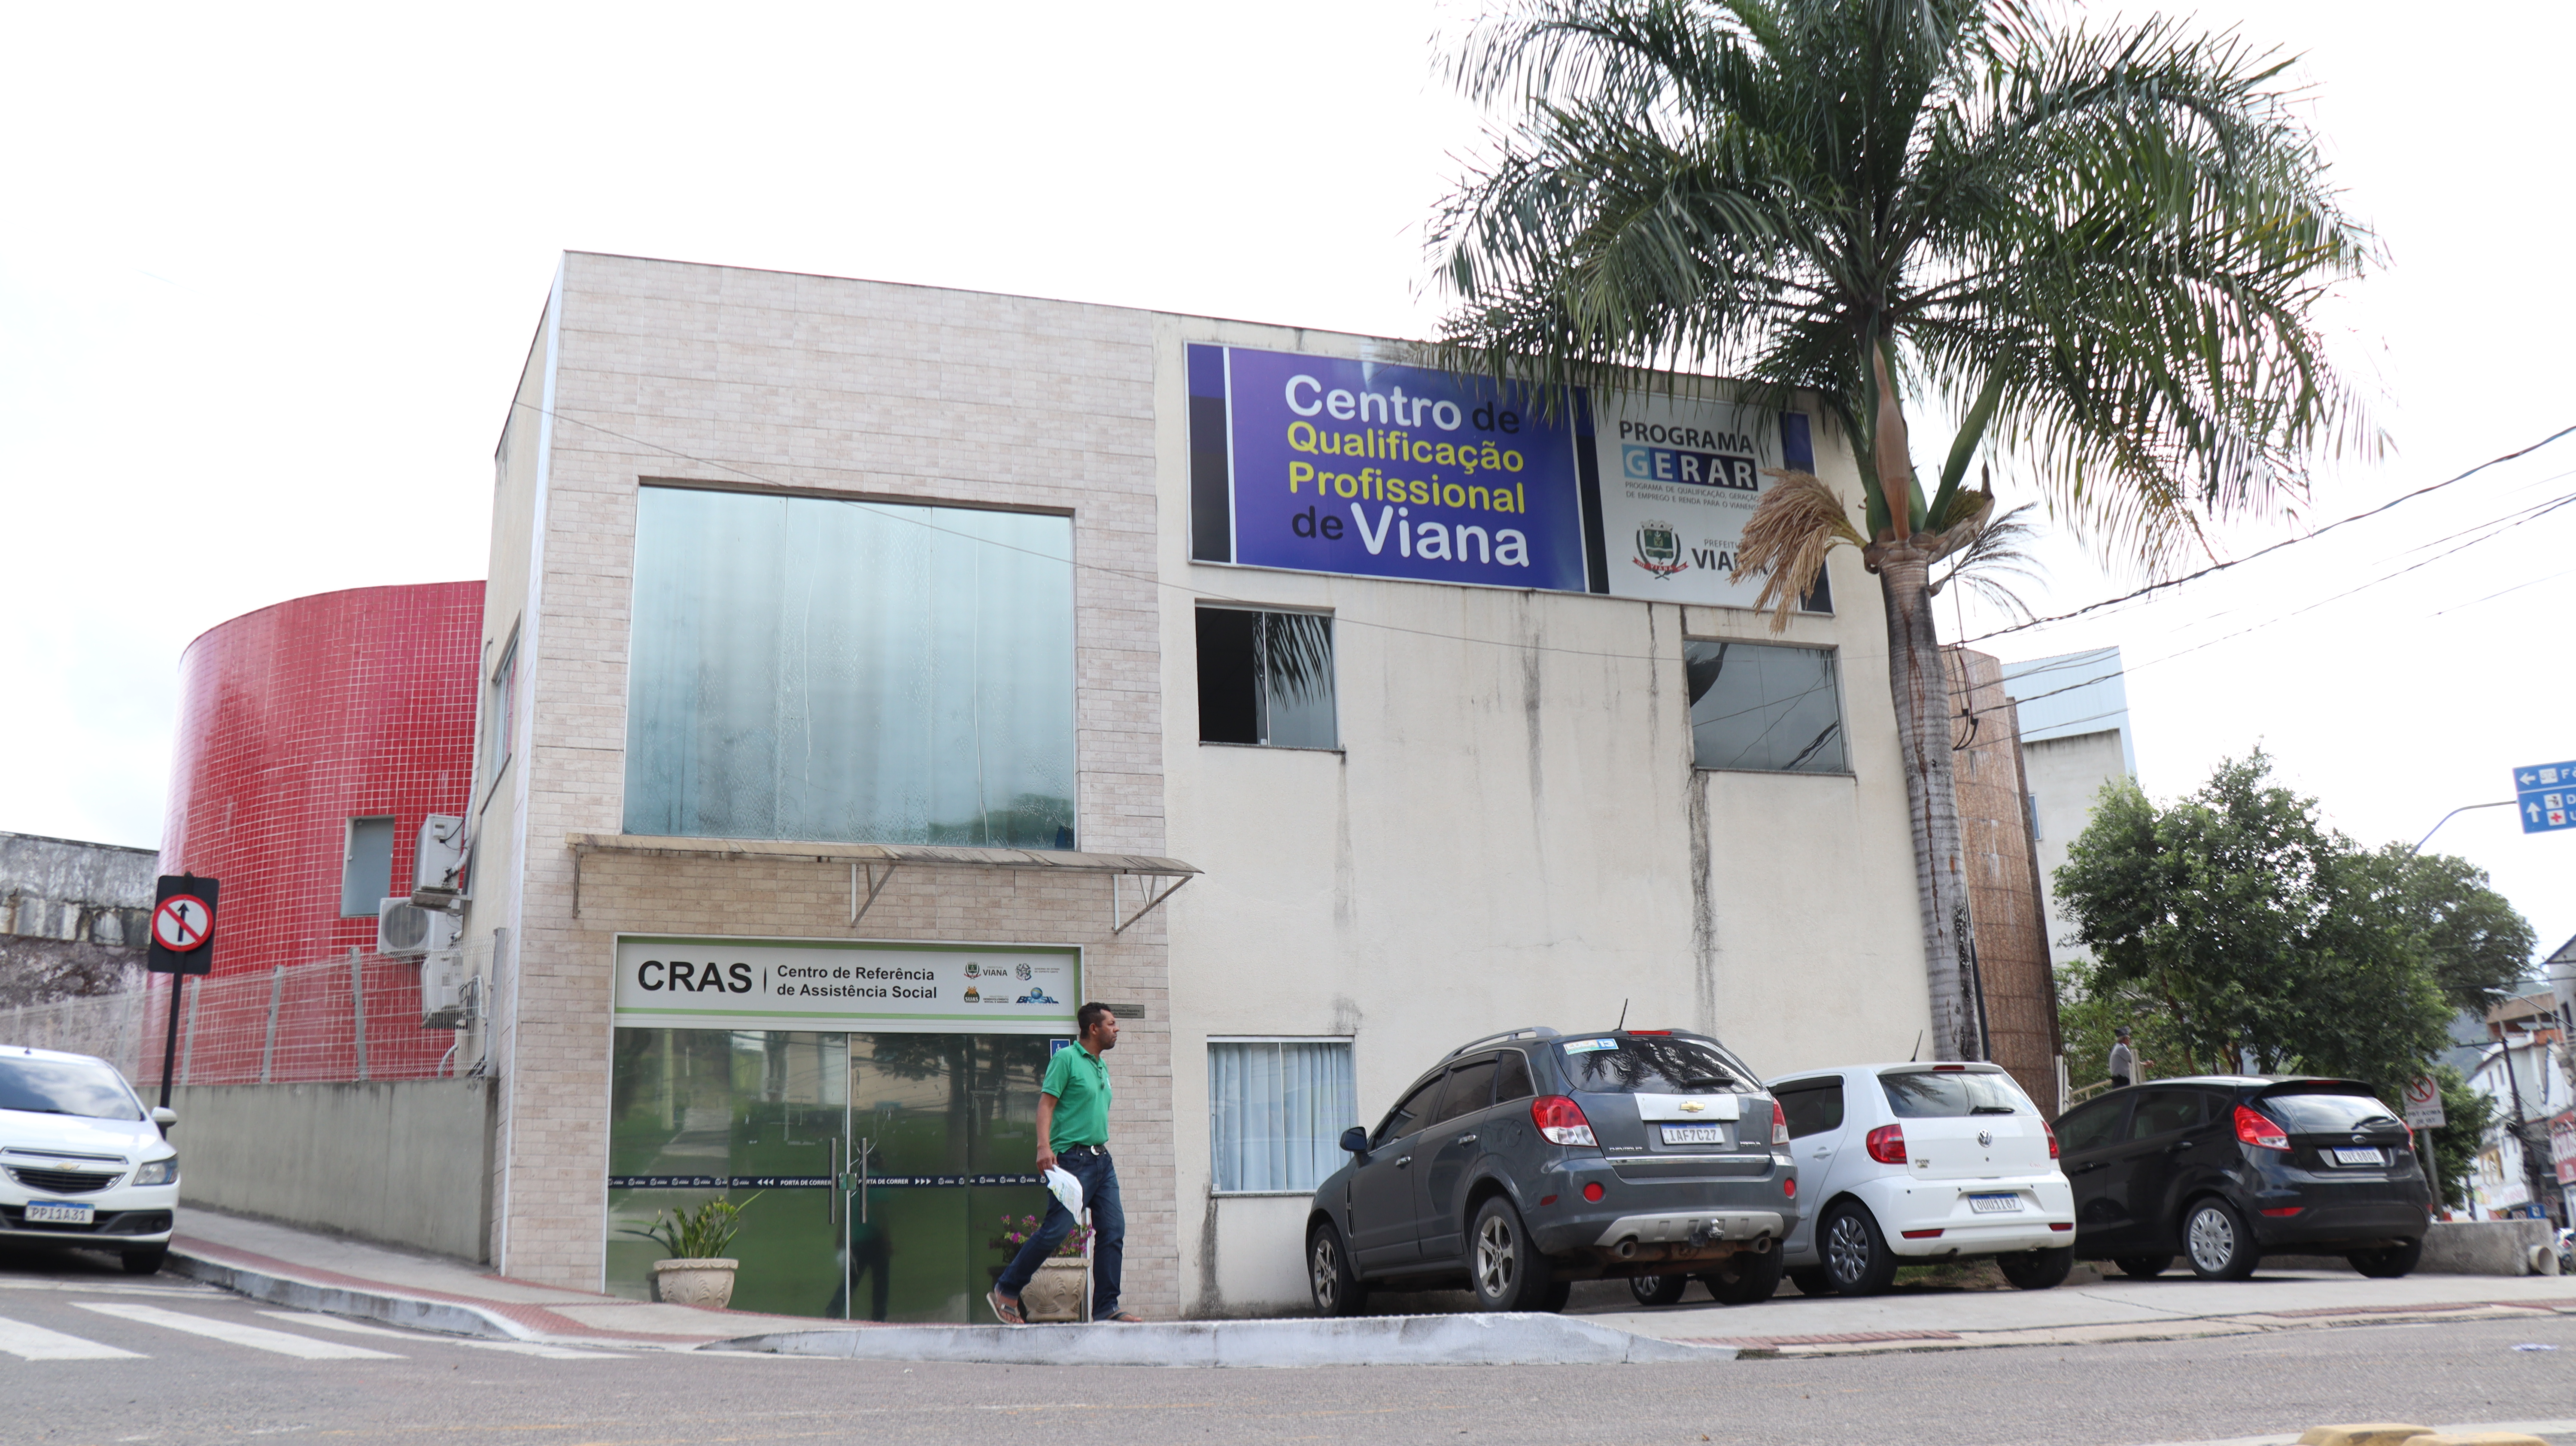 CRAS de Viana Sede realiza reunião para auxiliar beneficiários do Bolsa Família